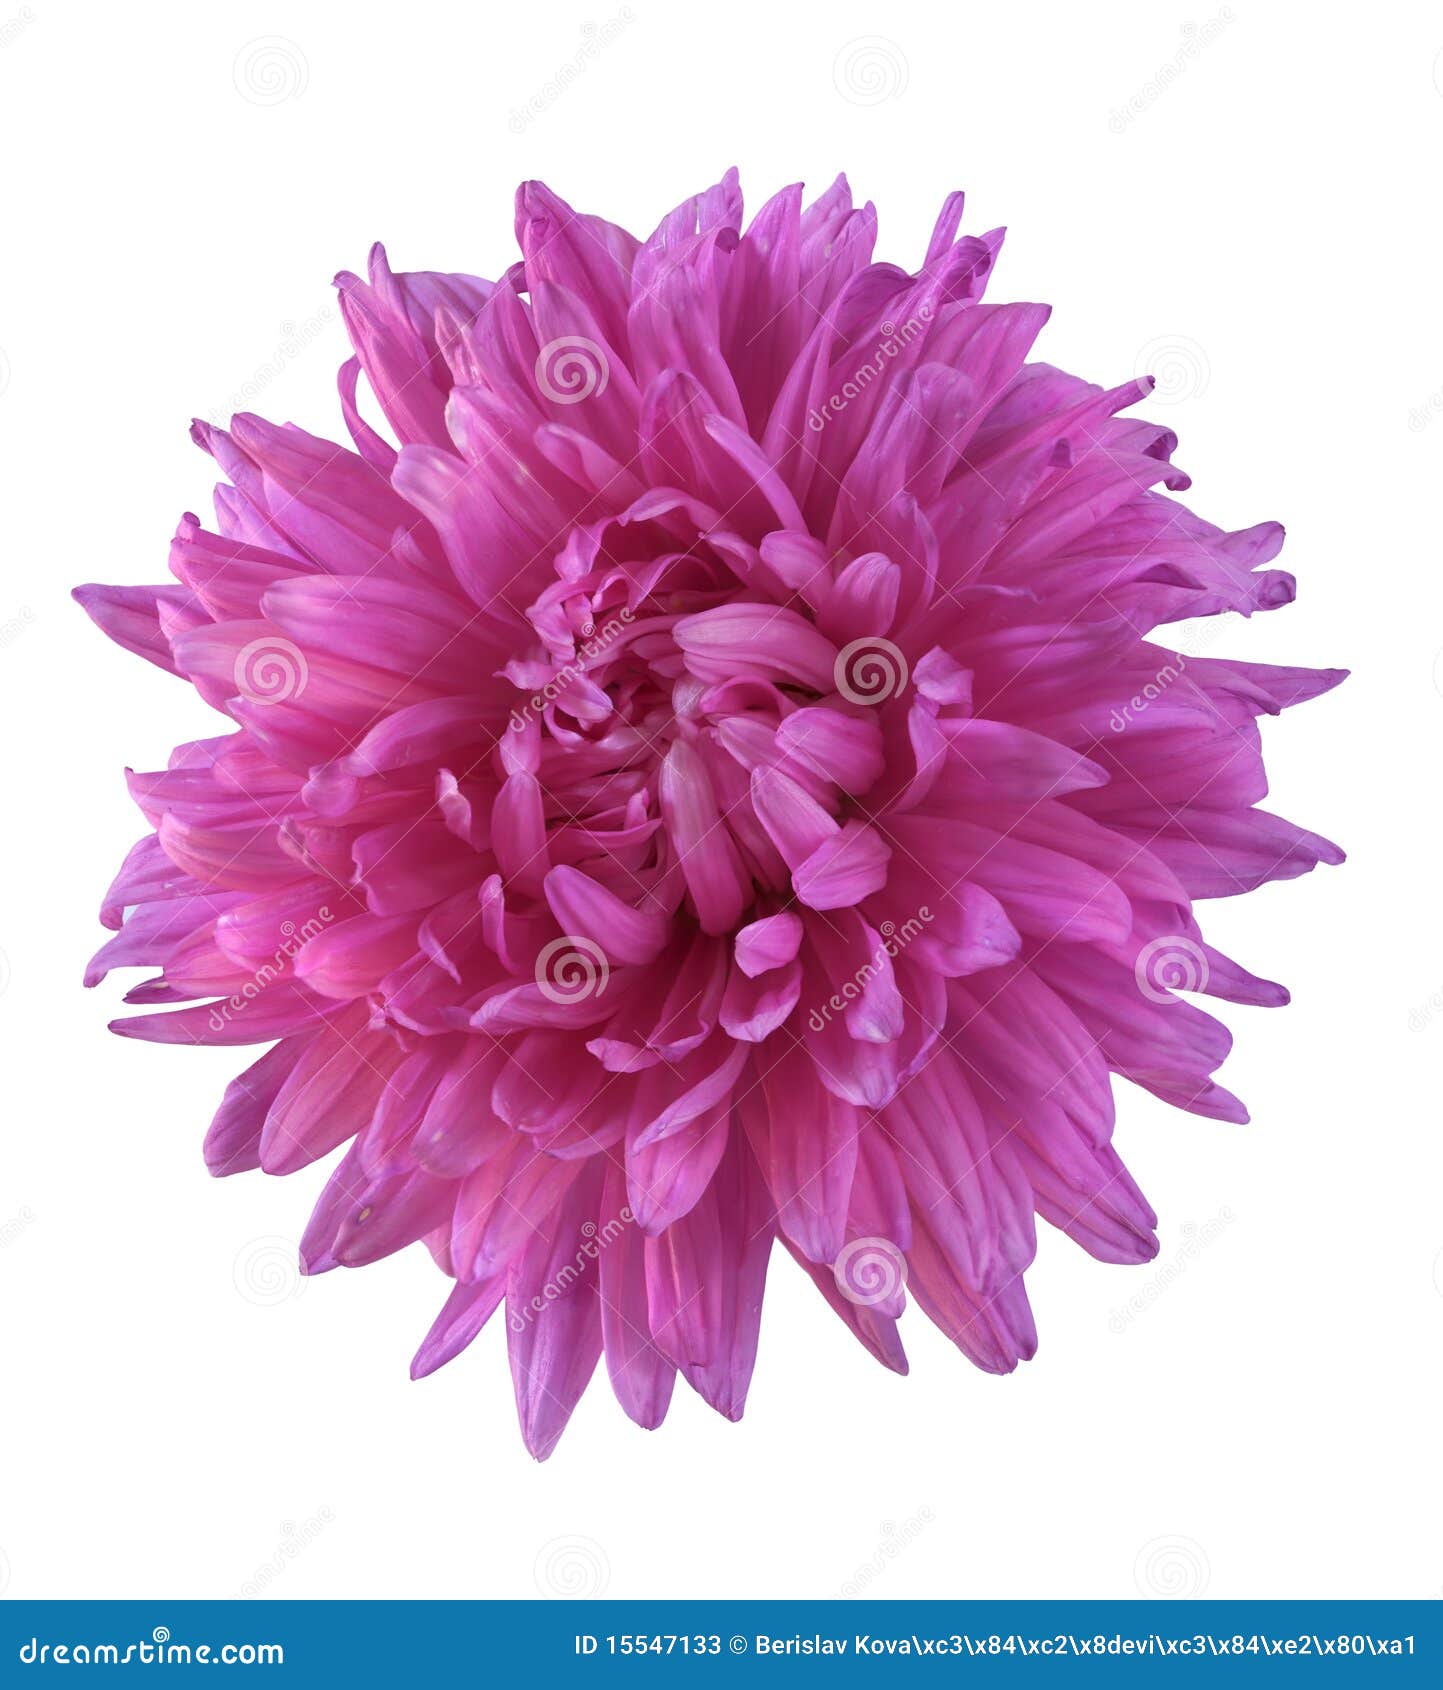 Flor magenta imagen de archivo. Imagen de planta, flora - 15547133